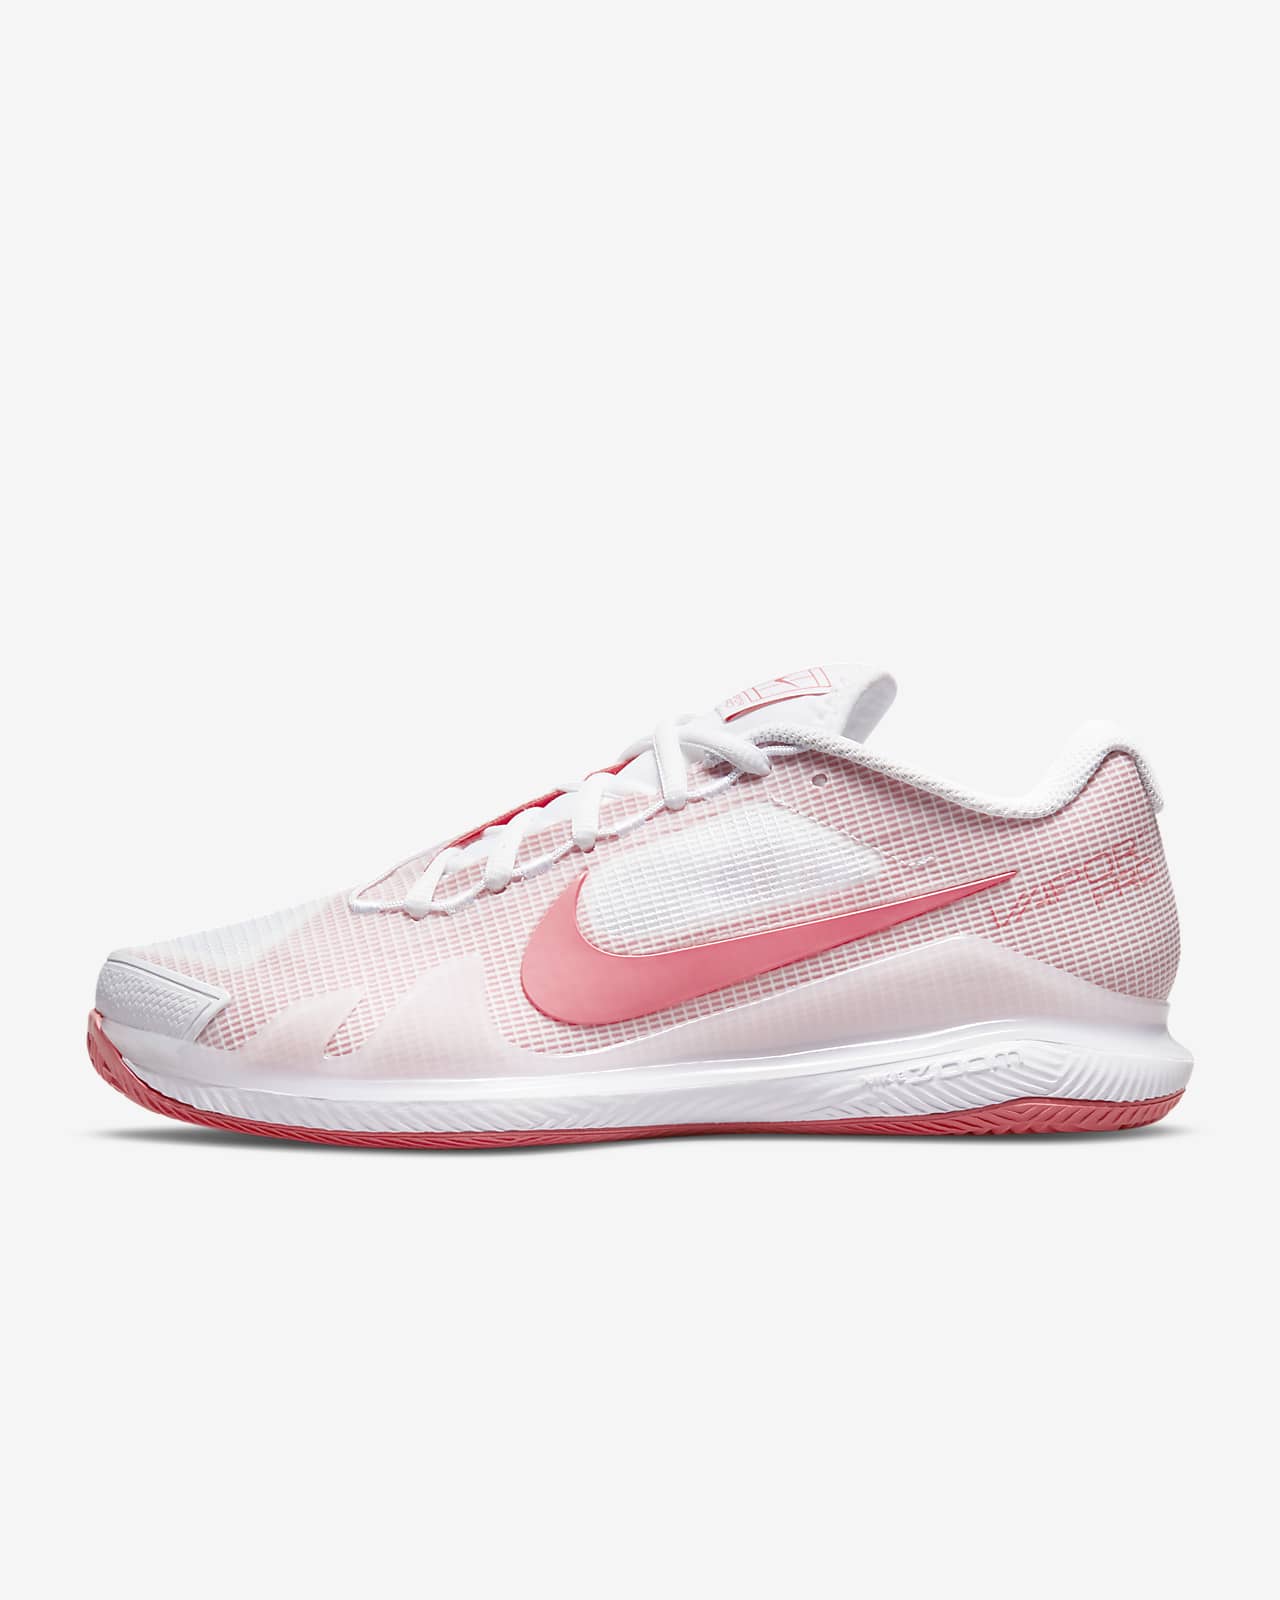 NikeCourt Air Zoom Vapor Pro Tennisschoen voor dames (gravel)